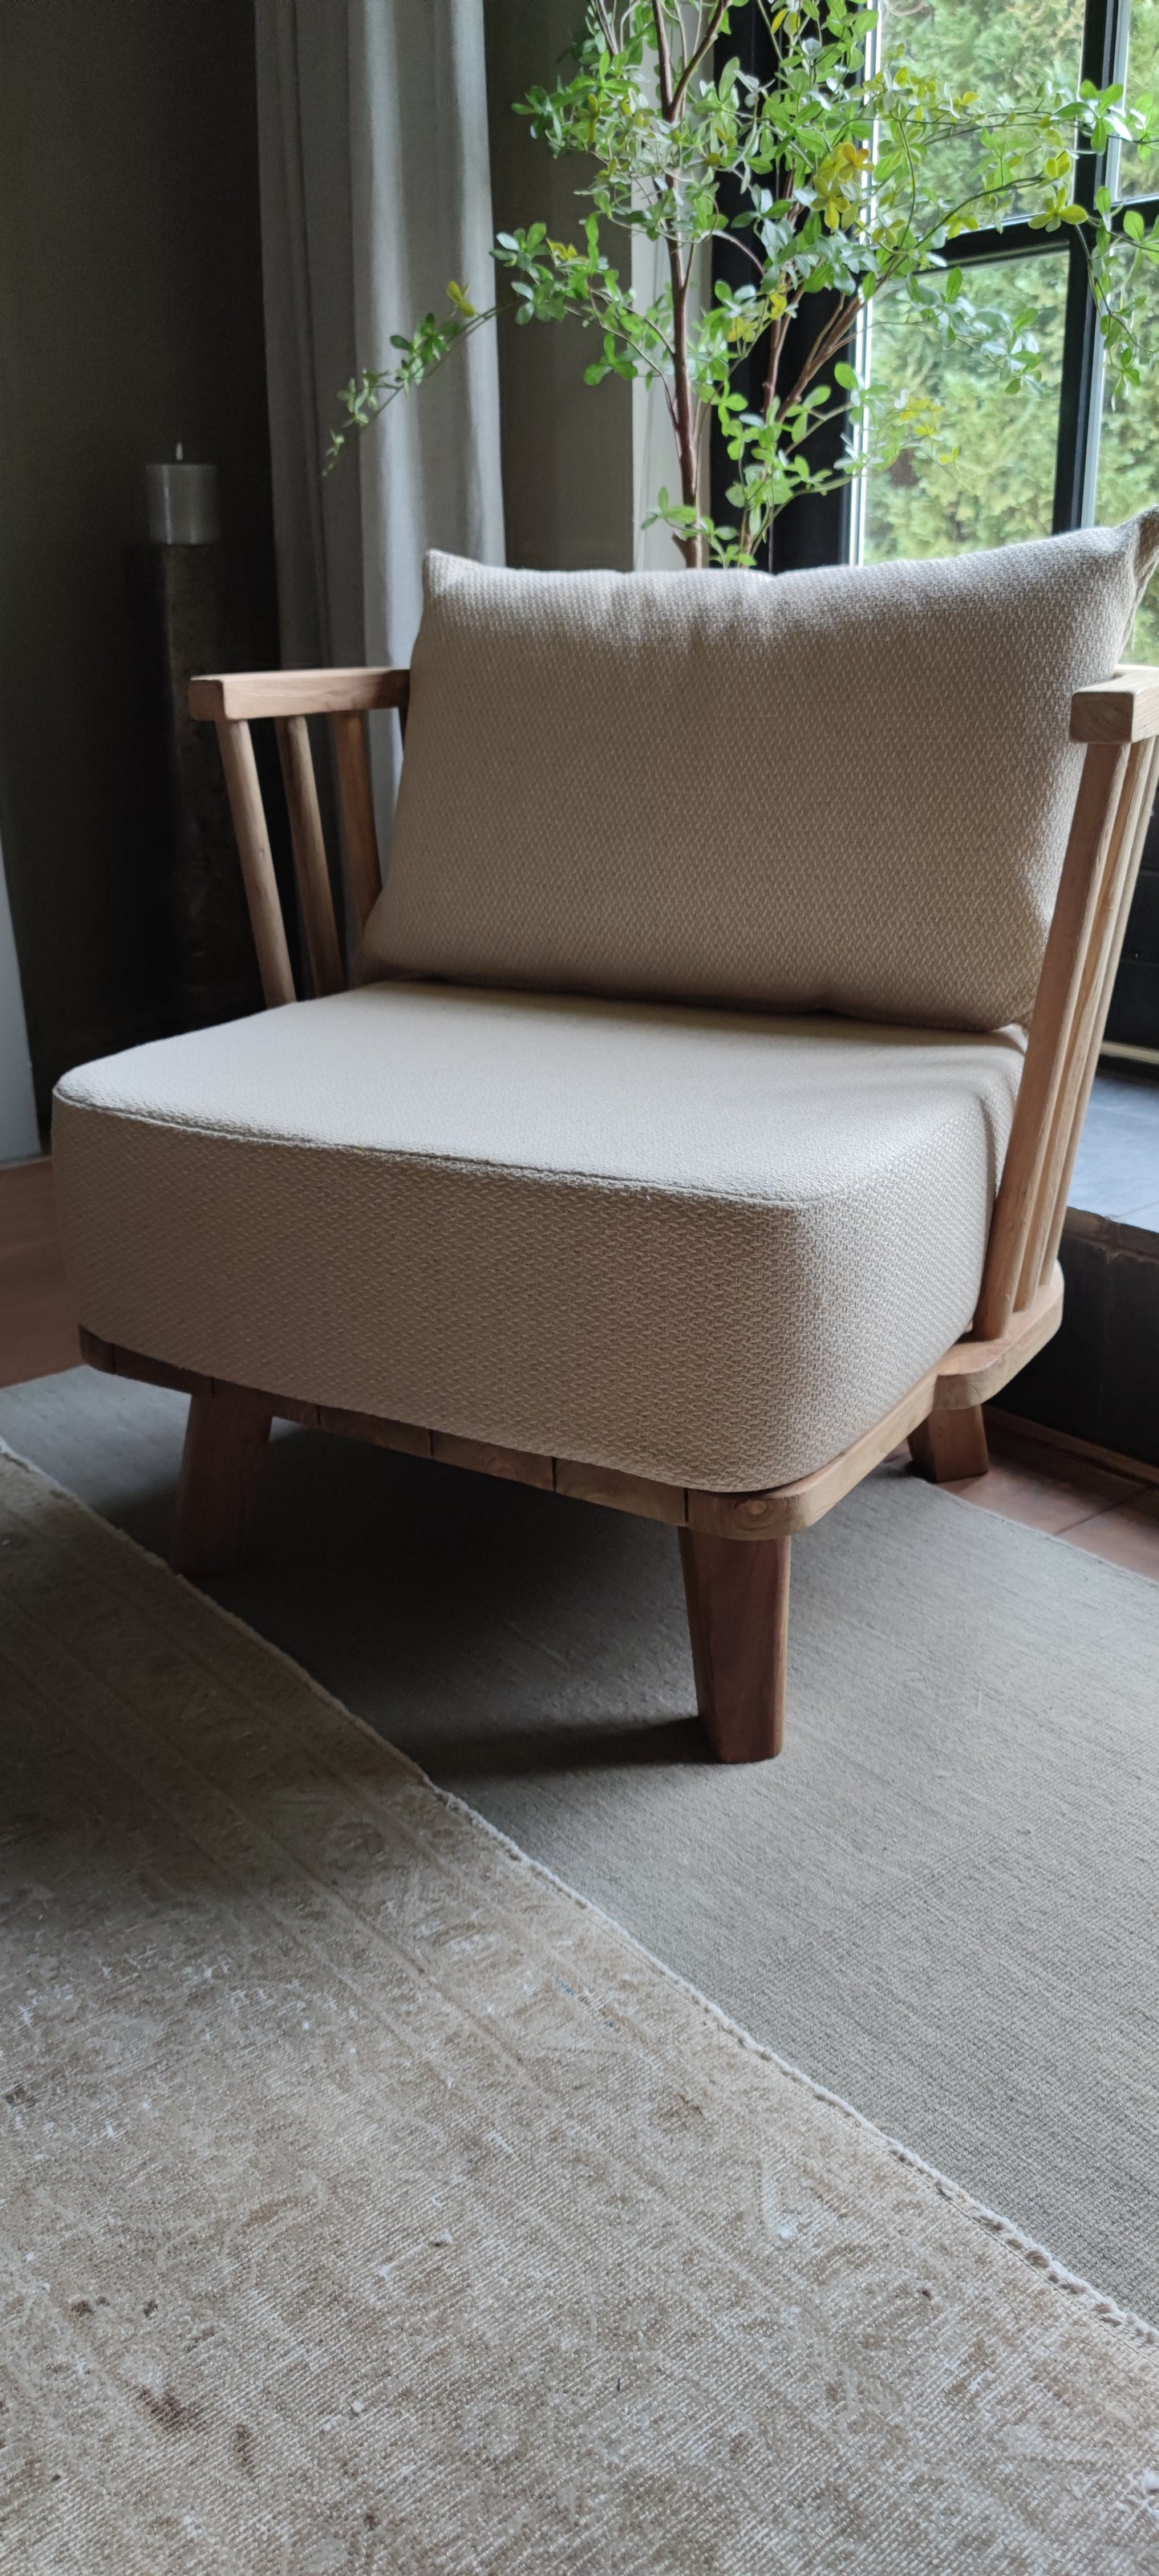 Modern rustic fauteuil nieuw showmodel 1 stuks